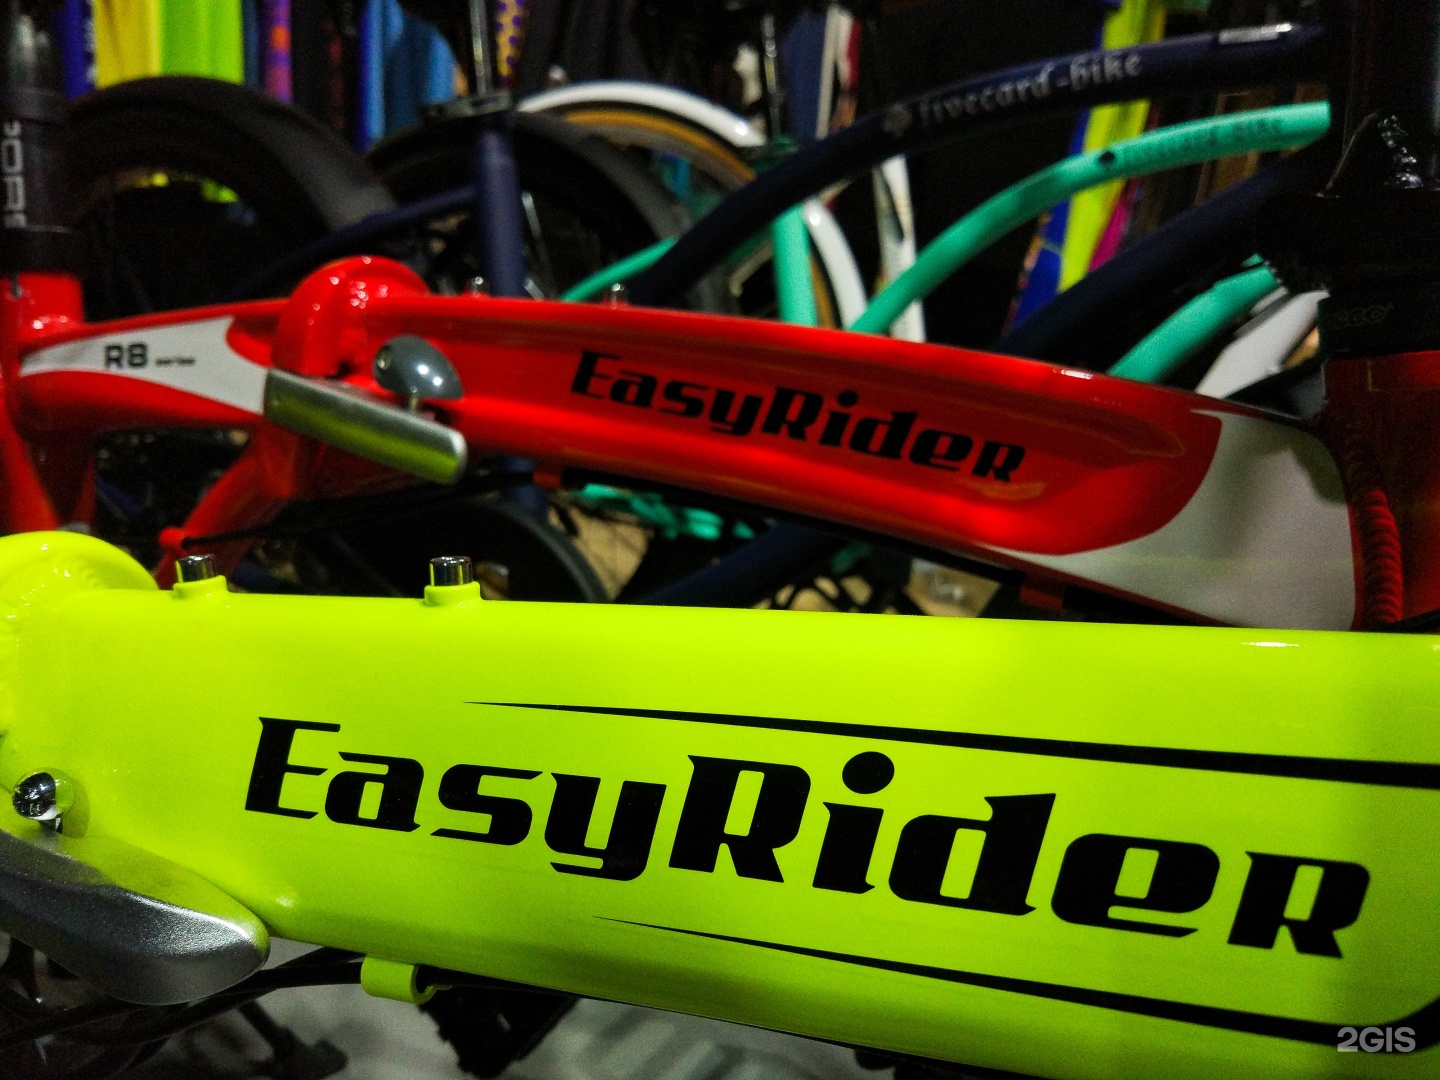 Купить велосипед во владивостоке. Iride shop Владивосток. Сам себе велосипед Владивосток.